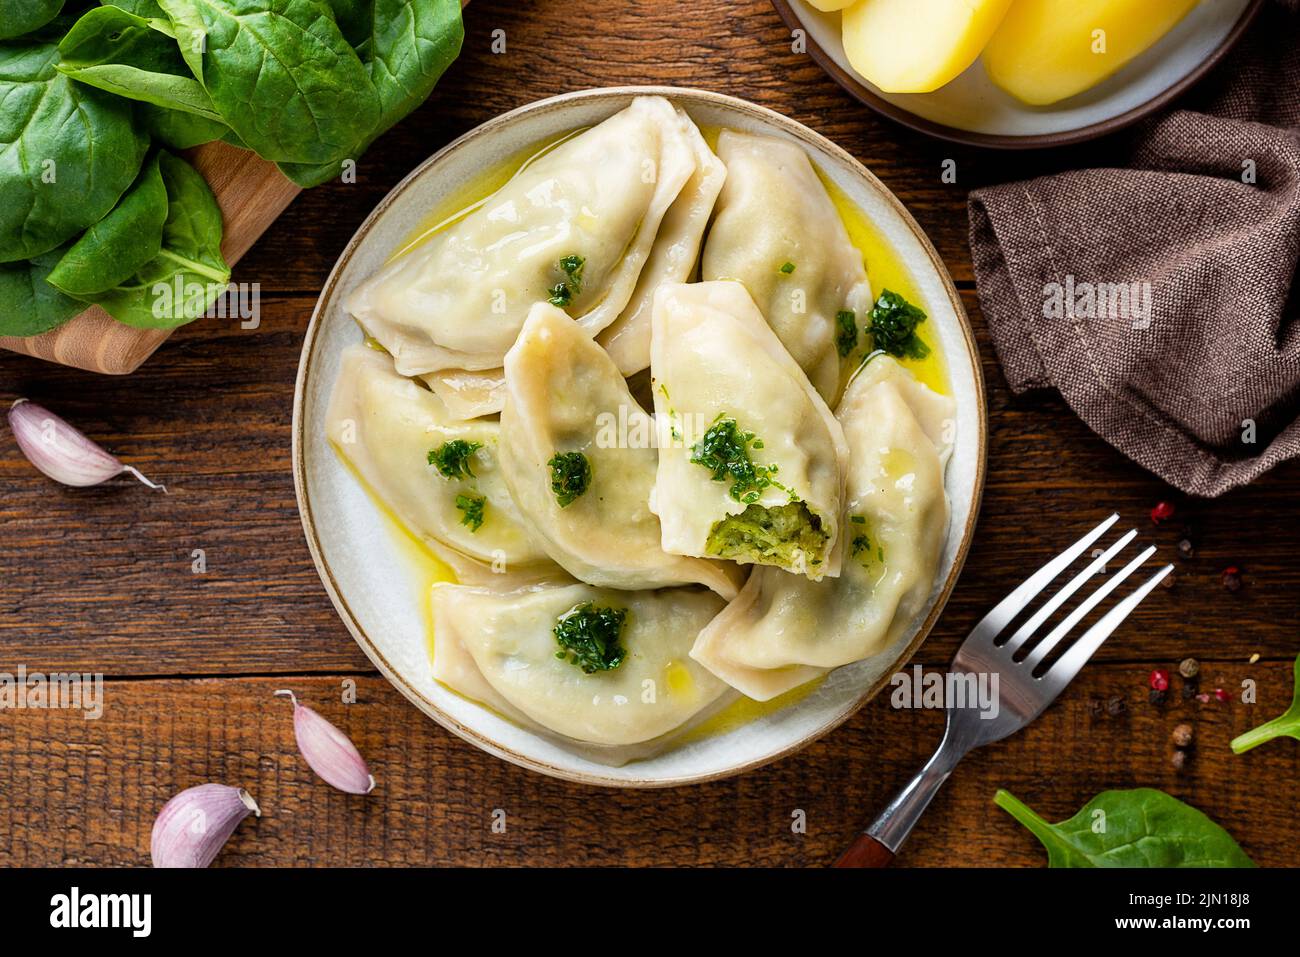 Spinatkartoffeln gefüllte Knödel oder Pierogi, ukrainische, polnische Küche Essen. Draufsicht, Holztisch Hintergrund Stockfoto